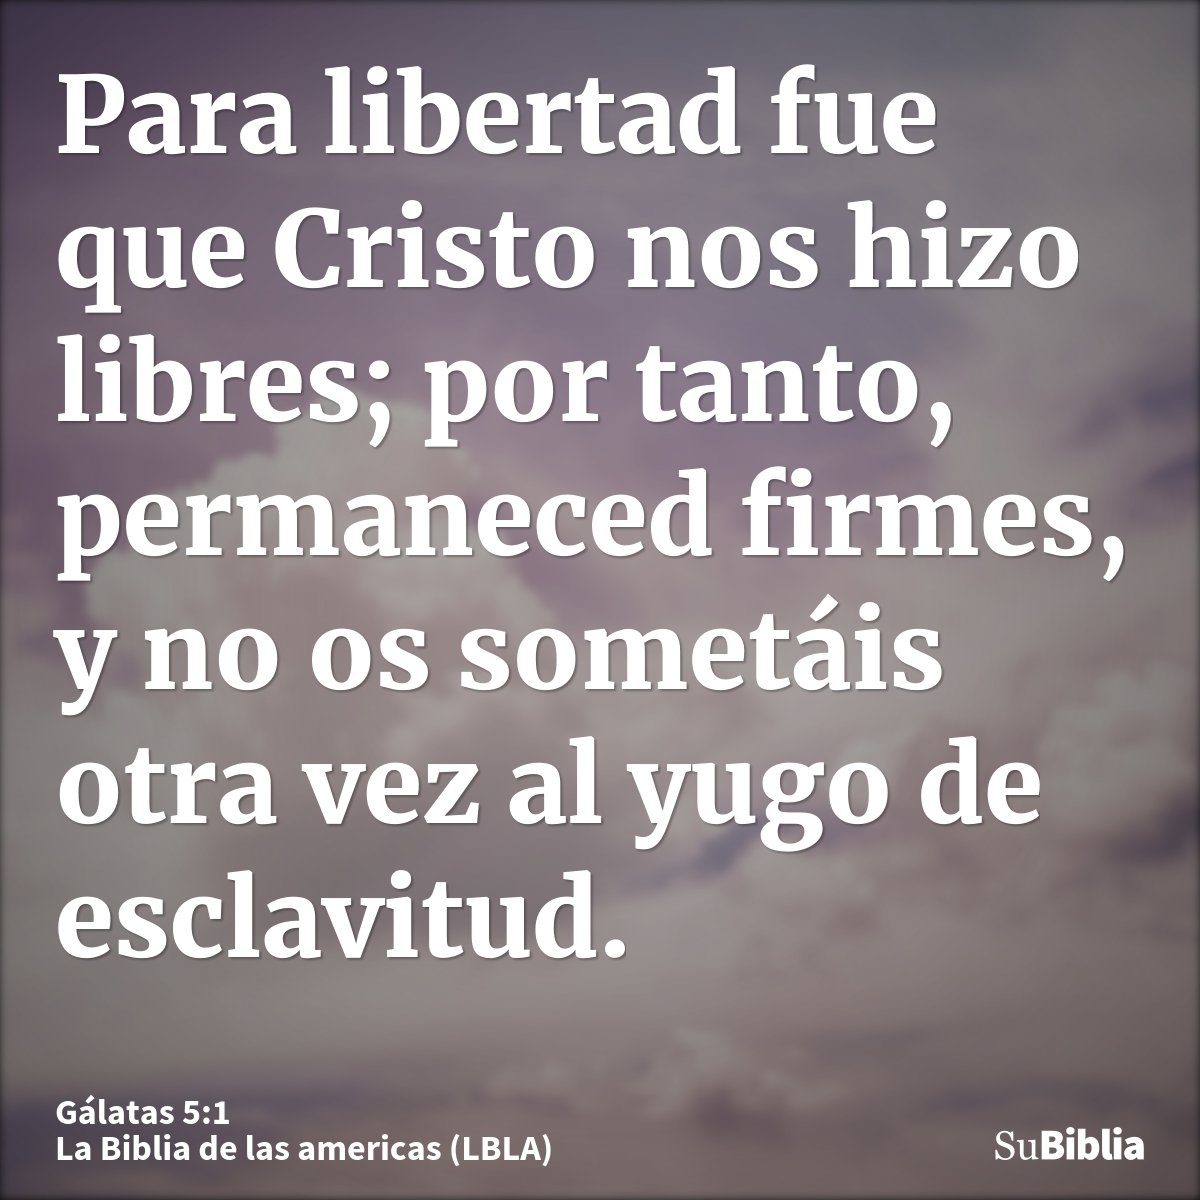 Para libertad fue que Cristo nos hizo libres; por tanto, permaneced firmes, y no os sometáis otra vez al yugo de esclavitud.